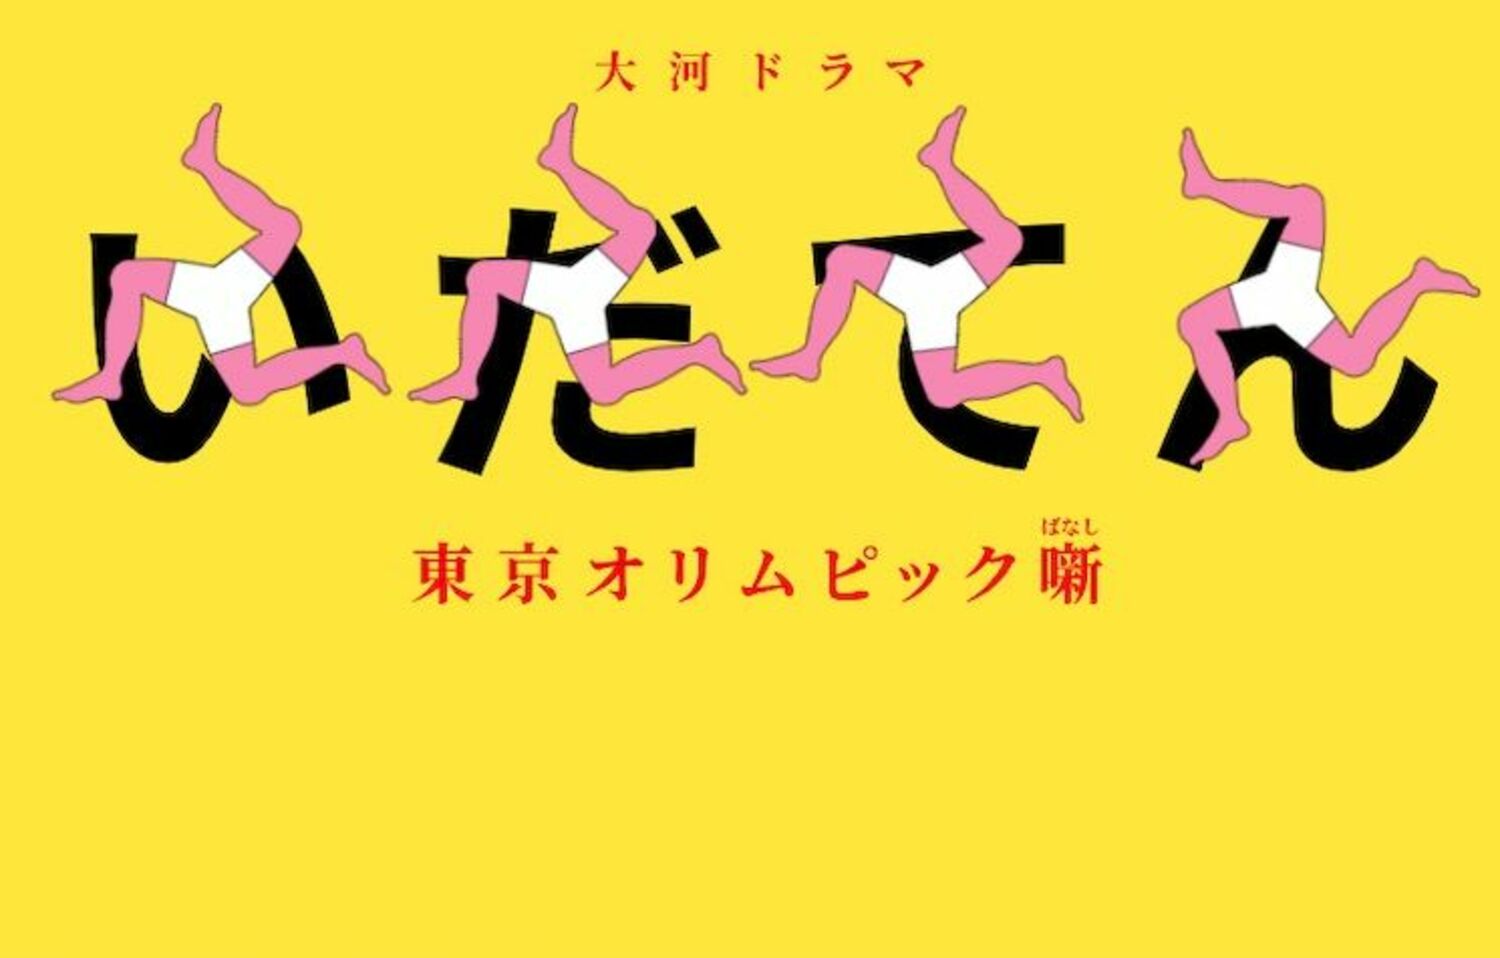 『いだてん』生田斗真の“天狗倶楽部”は『土竜の唄』の再来!?の画像